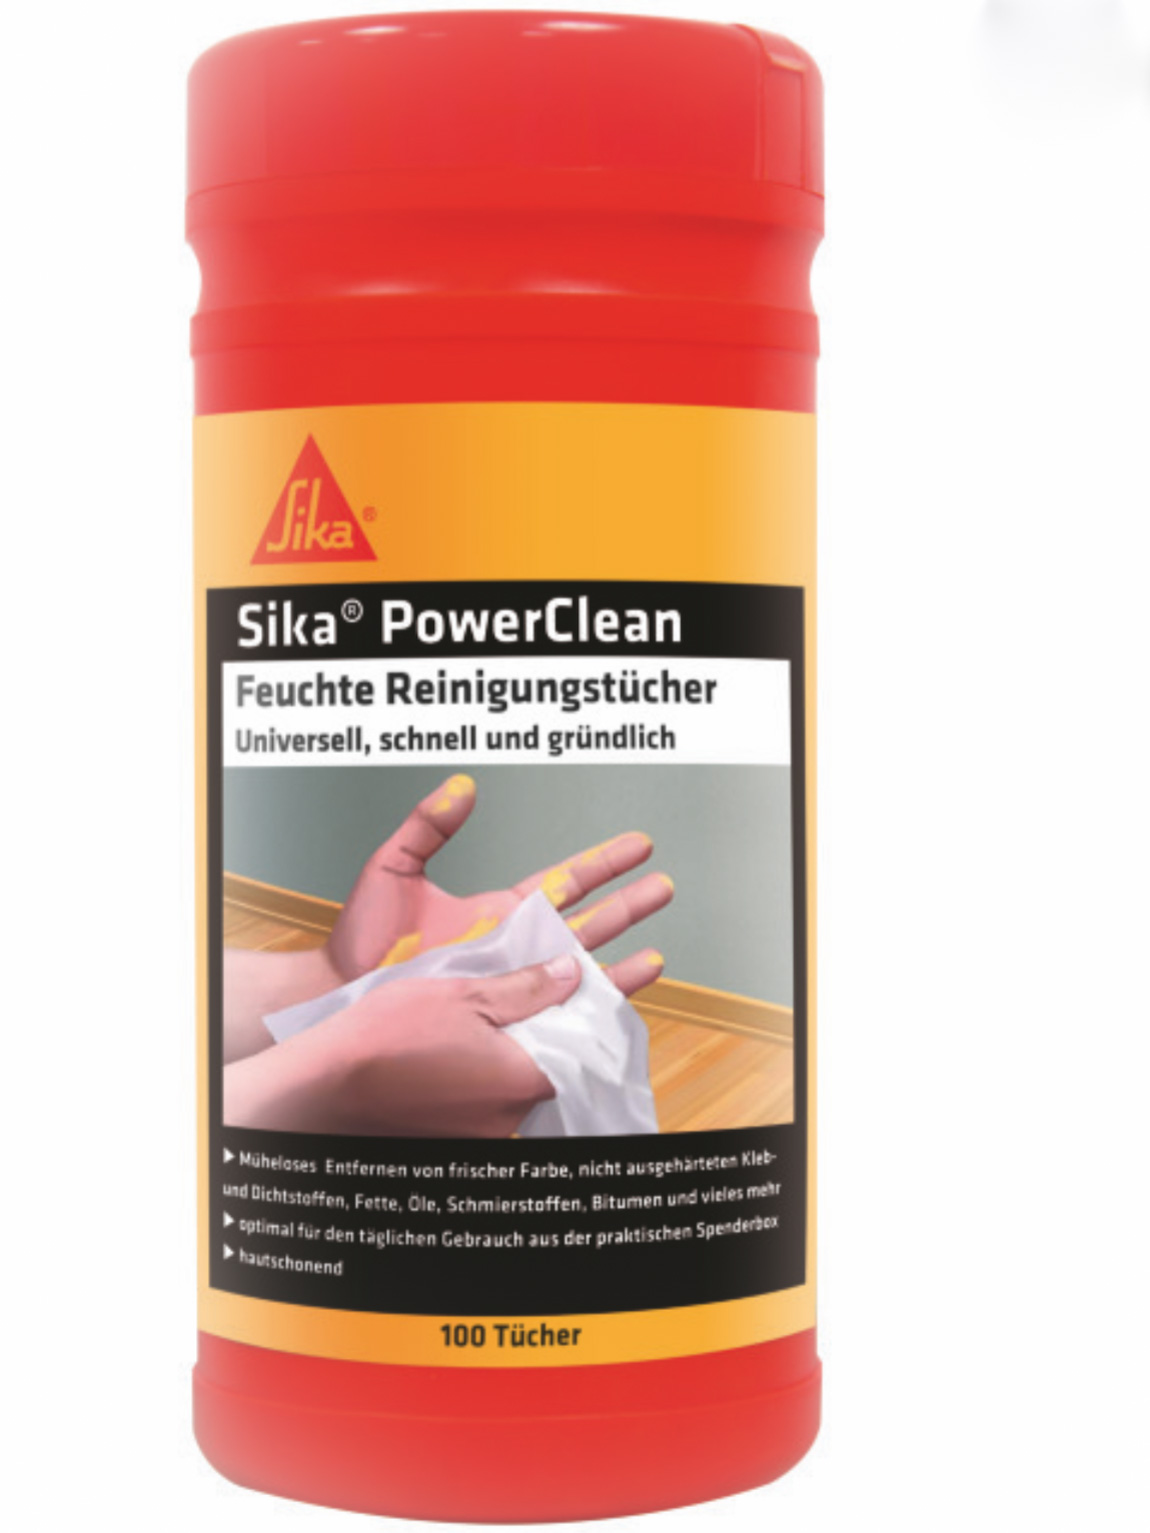 Sika PowerClean Reinigungstuch Benzin Klebstoffe Lacke Reinigung Tuch 100 Stück 